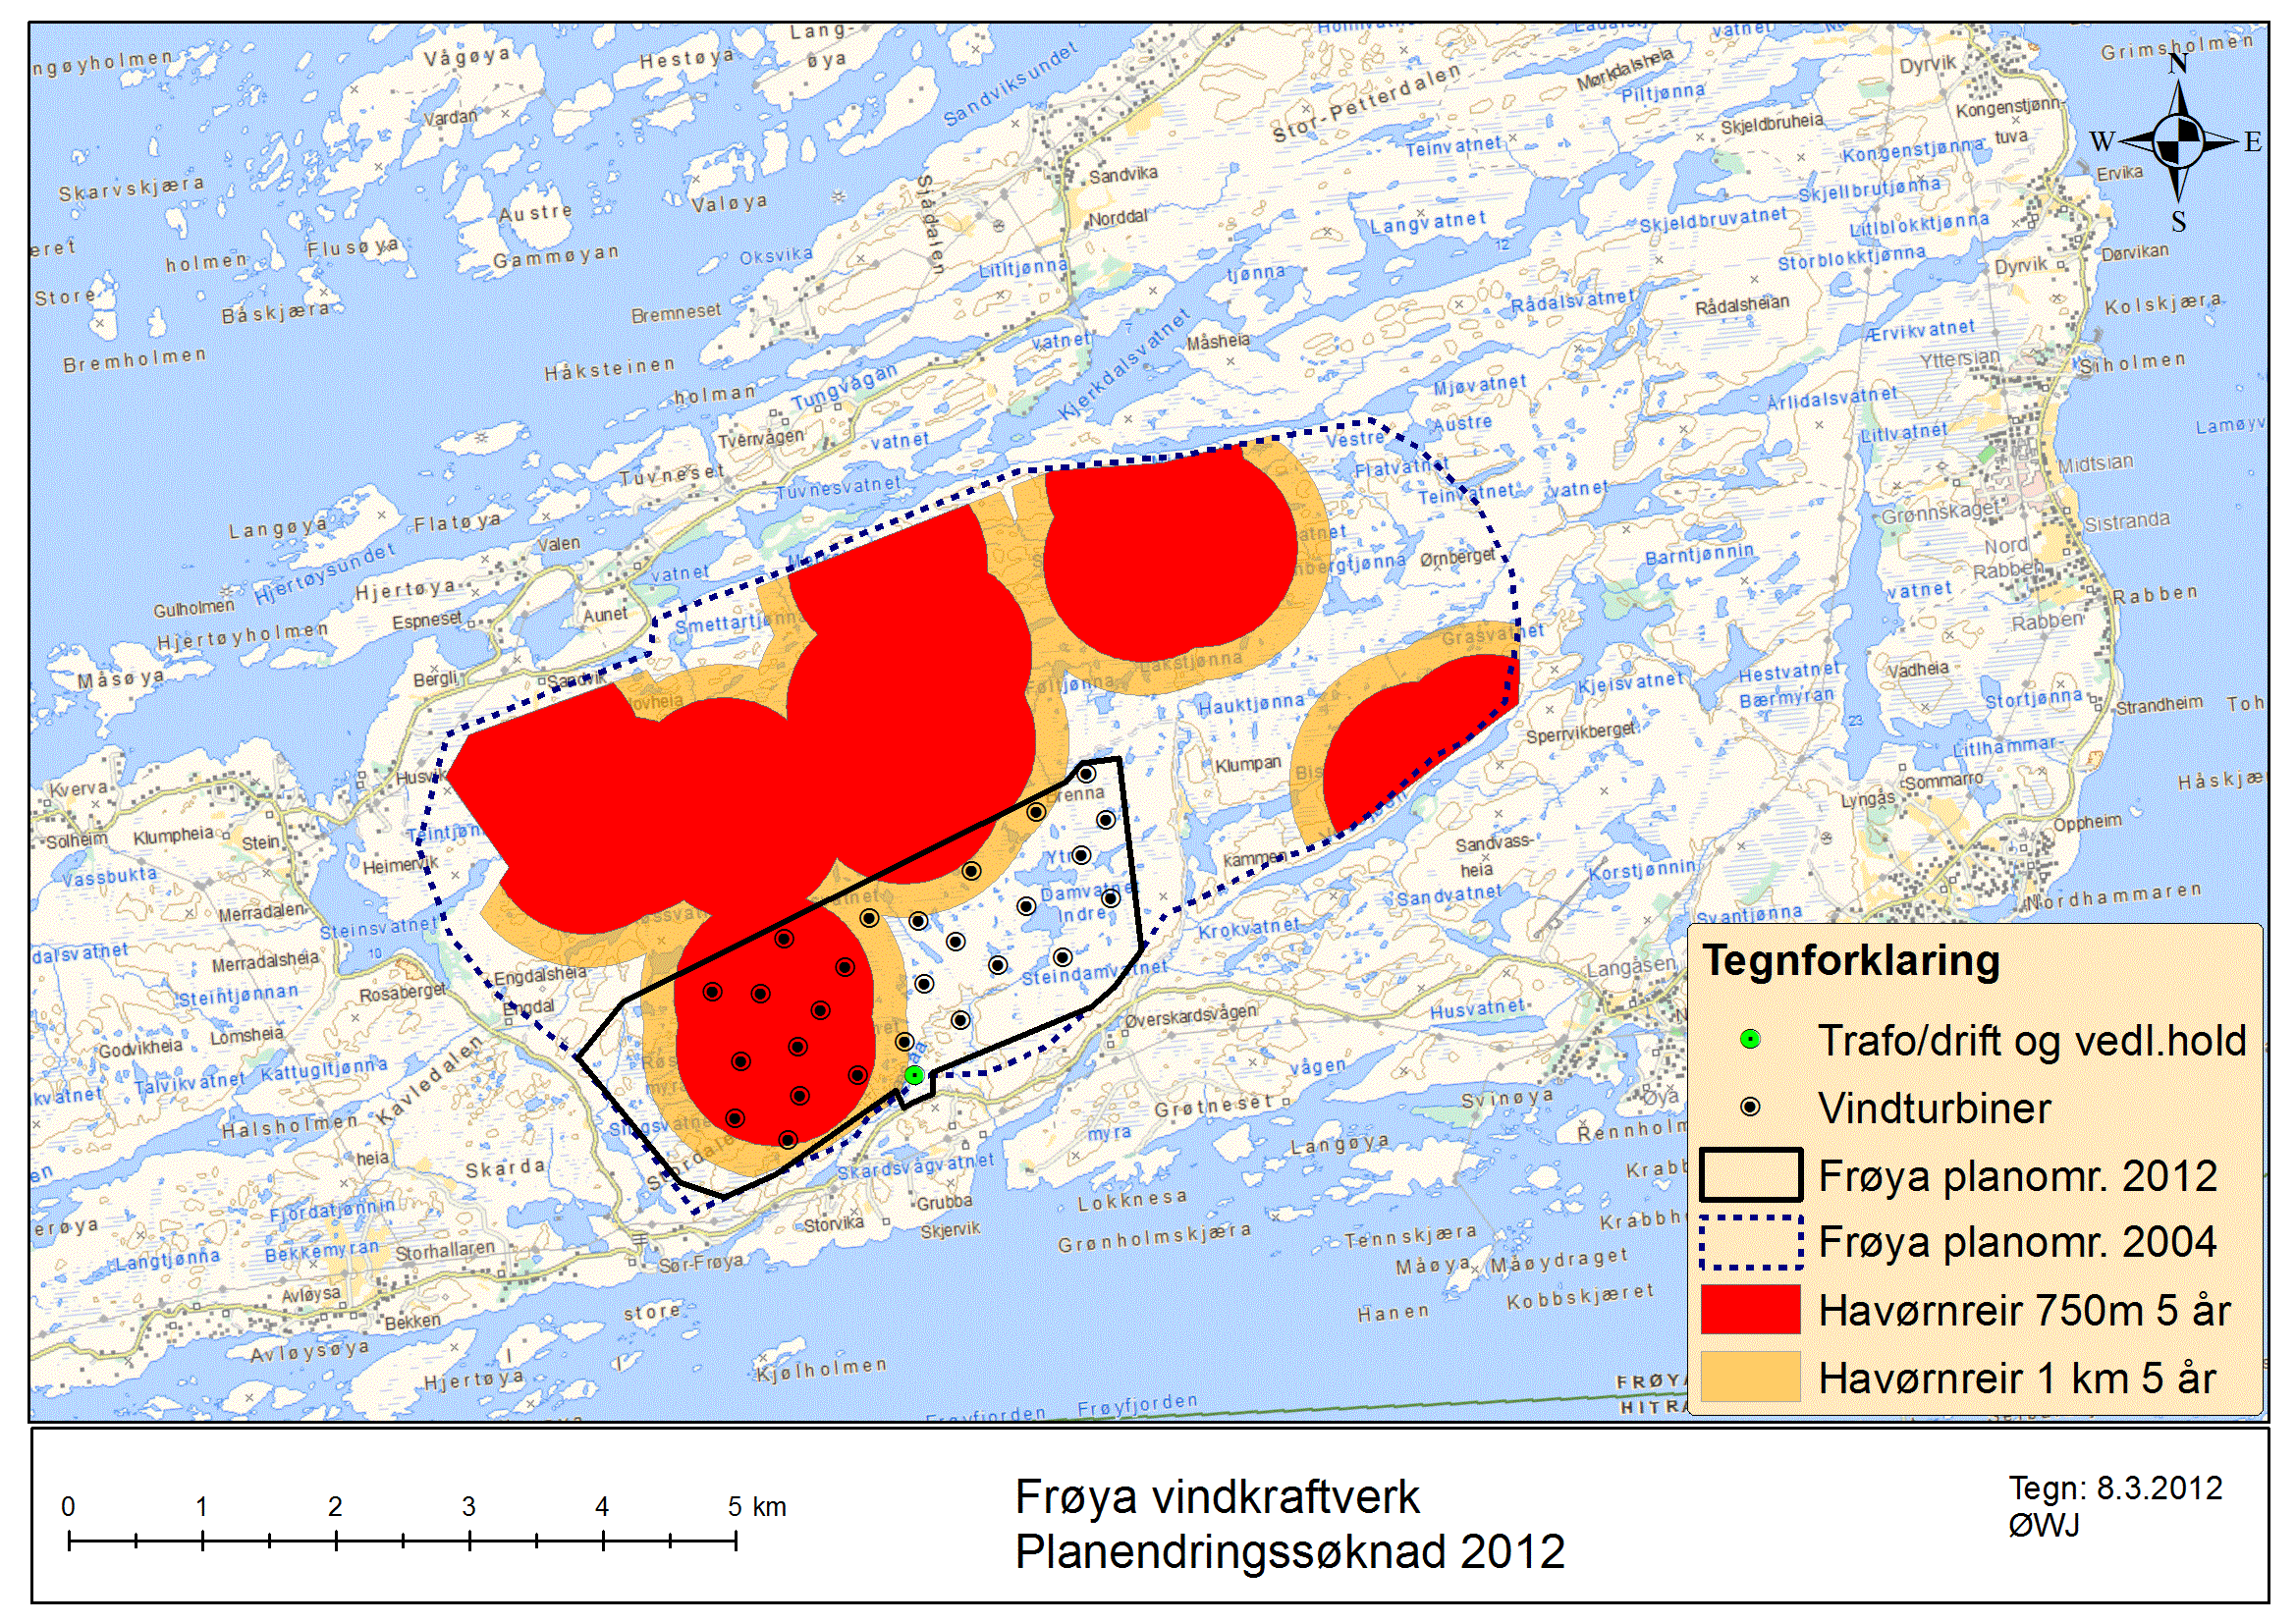 Figur 7 Spesielt verdifulle områder for fugl i planområdet for opprinnelig (stiplet) og ny avgrensning (solid) av Frøya vindkraftverk.